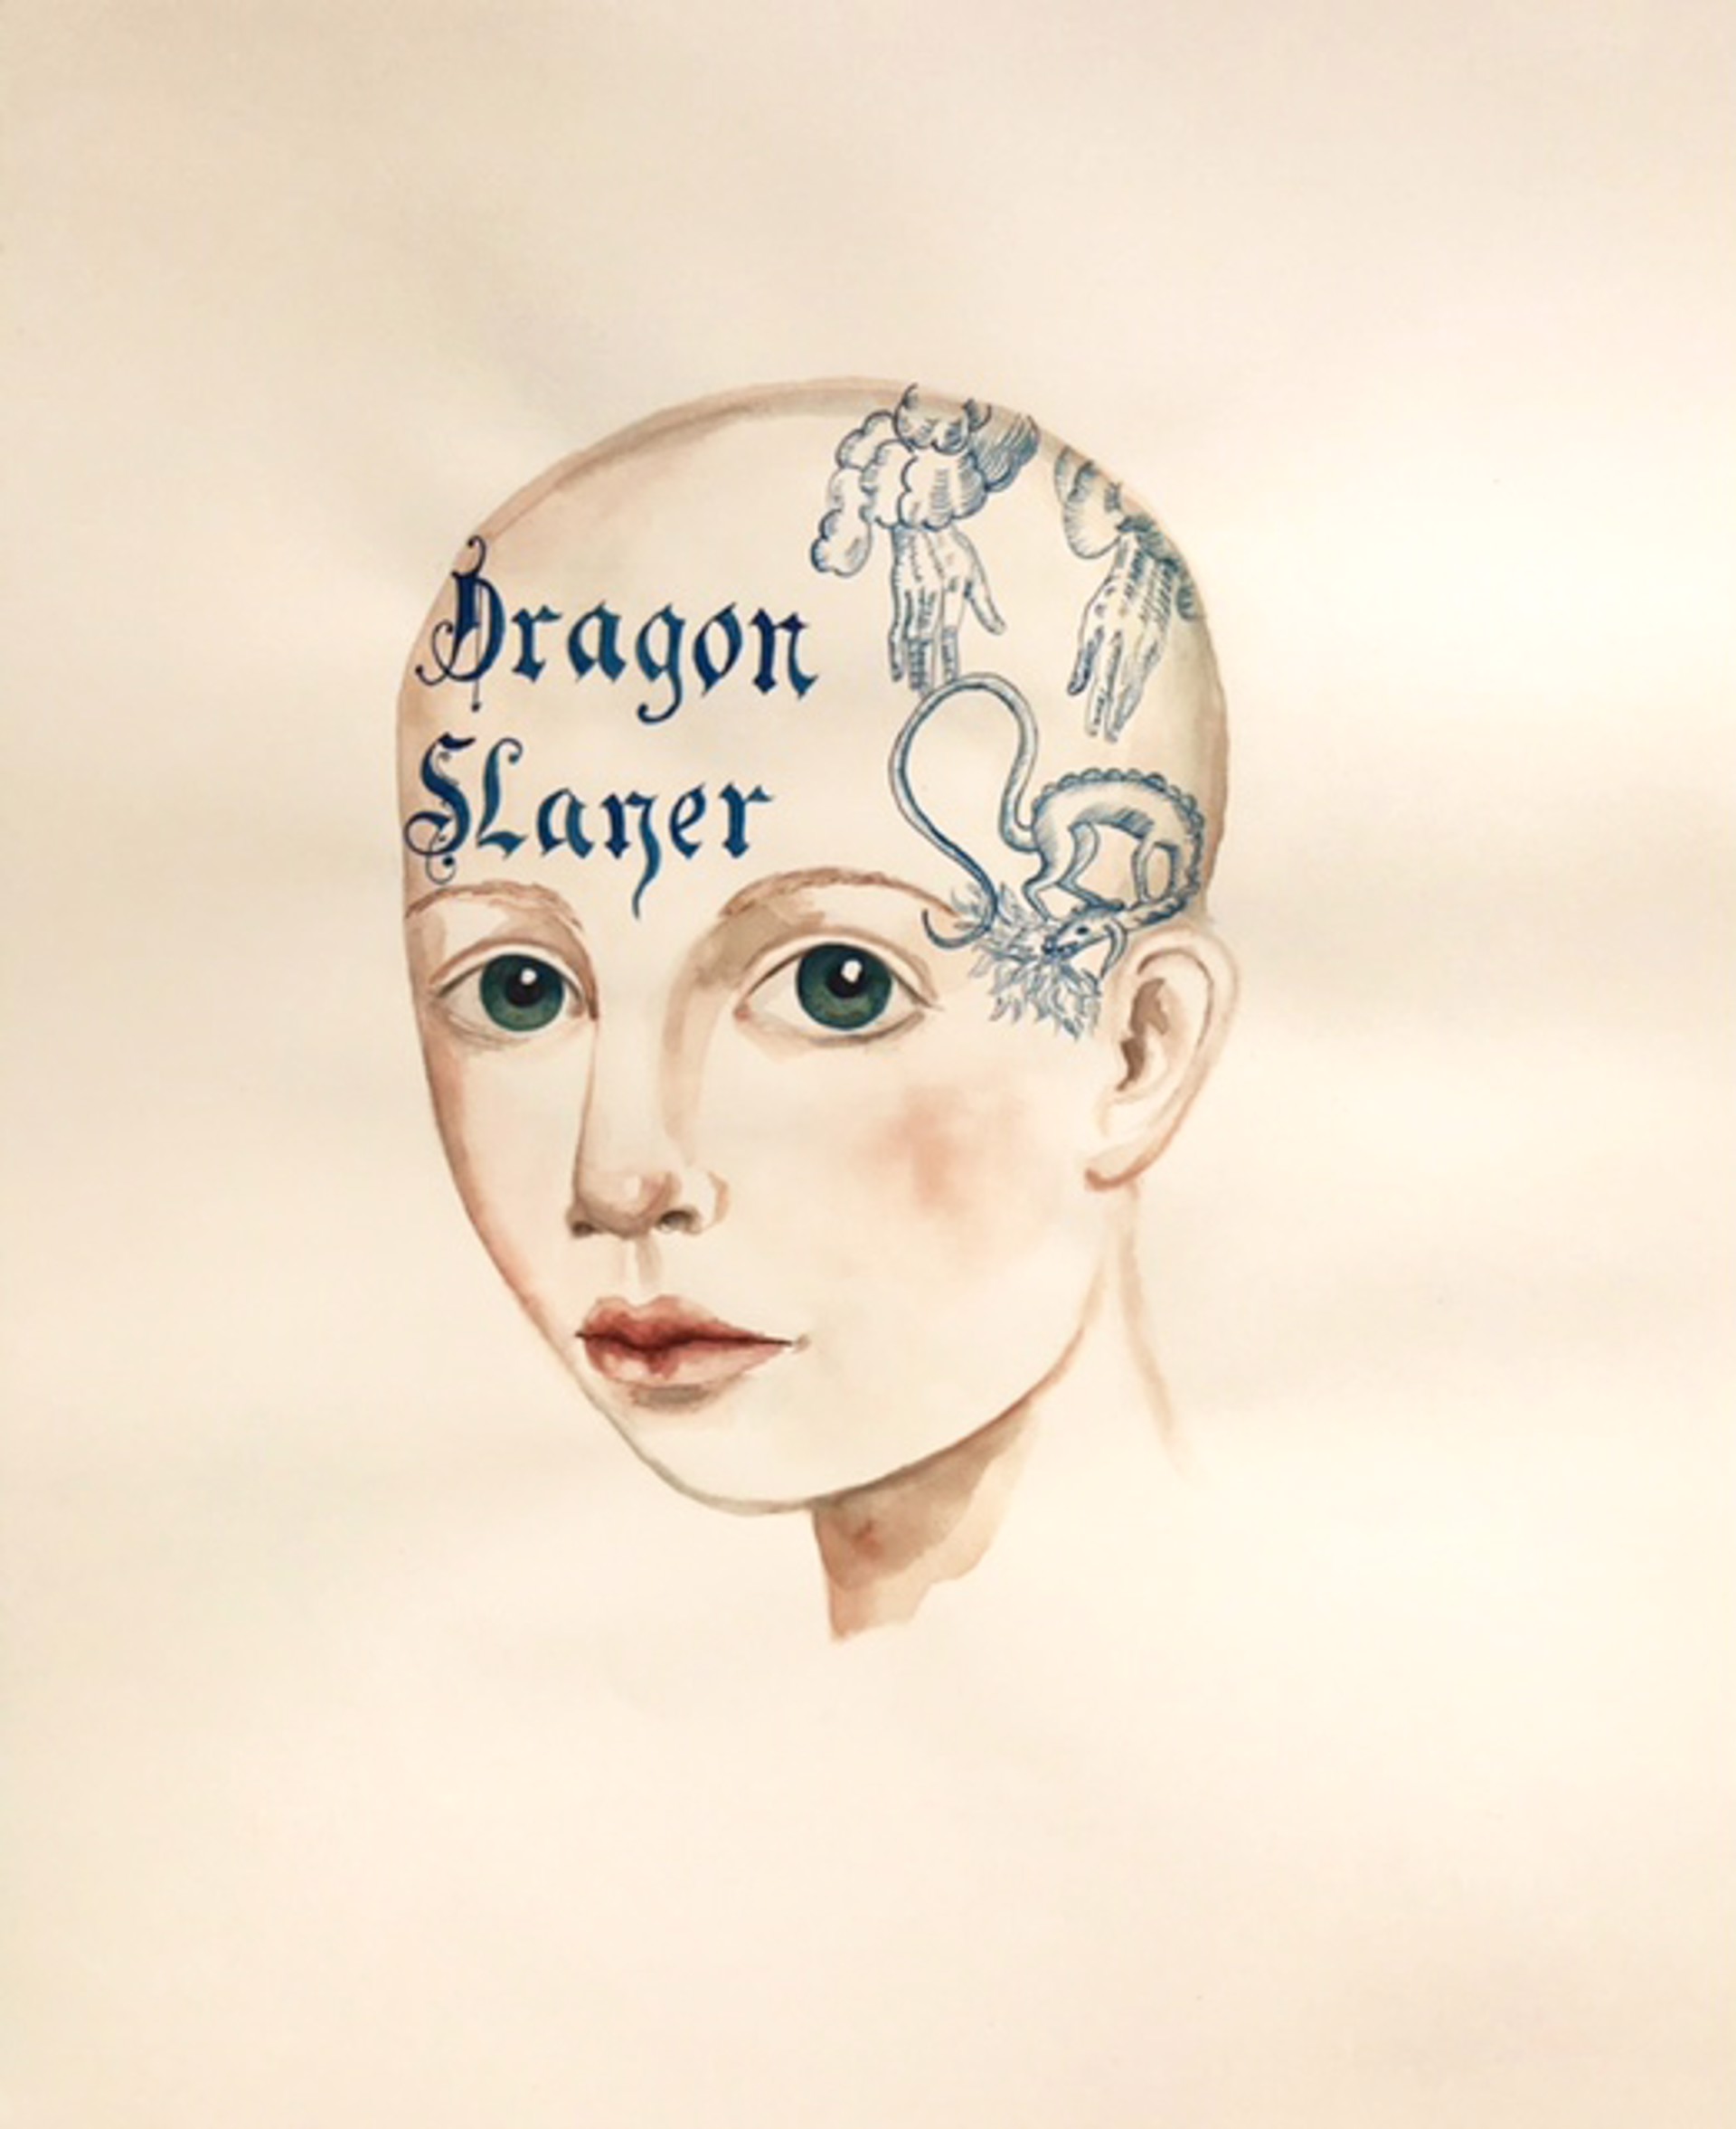 Dragon Slayer by Anne Siems